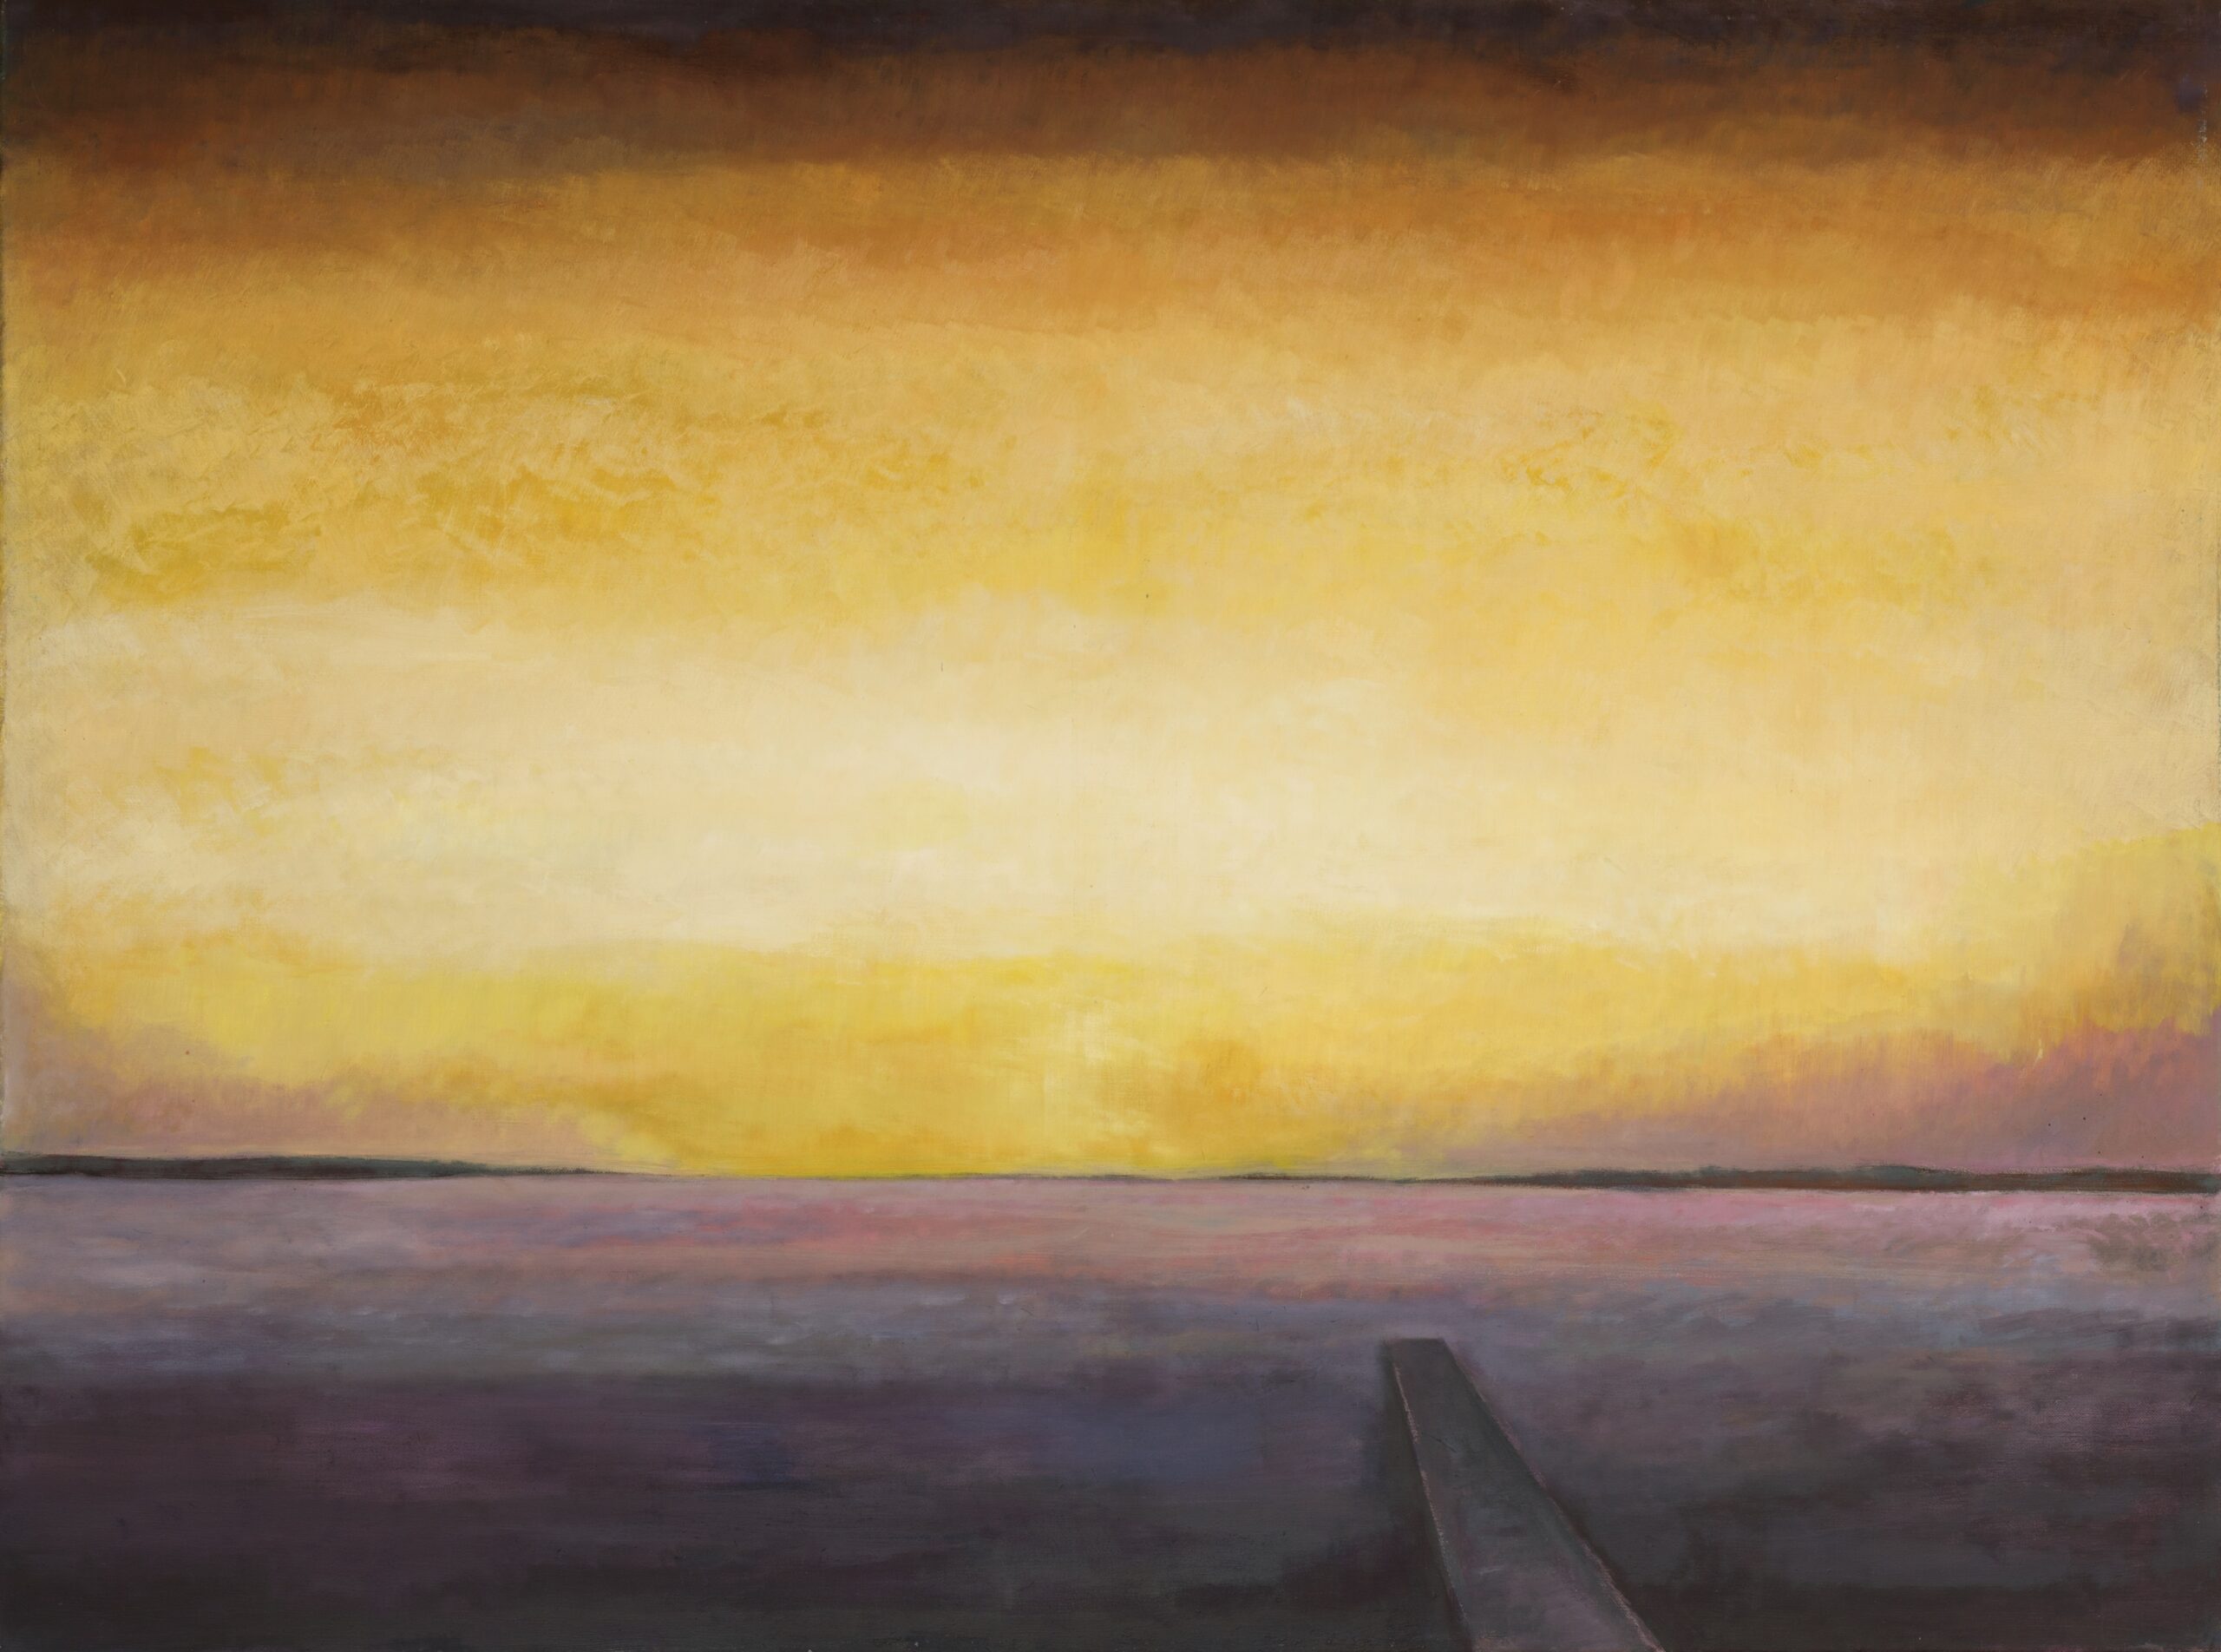 Obraz olejny, przedstawiający pejzaż. Przedstawia odległą przestrzeń z ciemną linią horyzontu. Niebo jest żółte. Prawej stronie jest kawałek drogi lub pomostu na jeziorze.